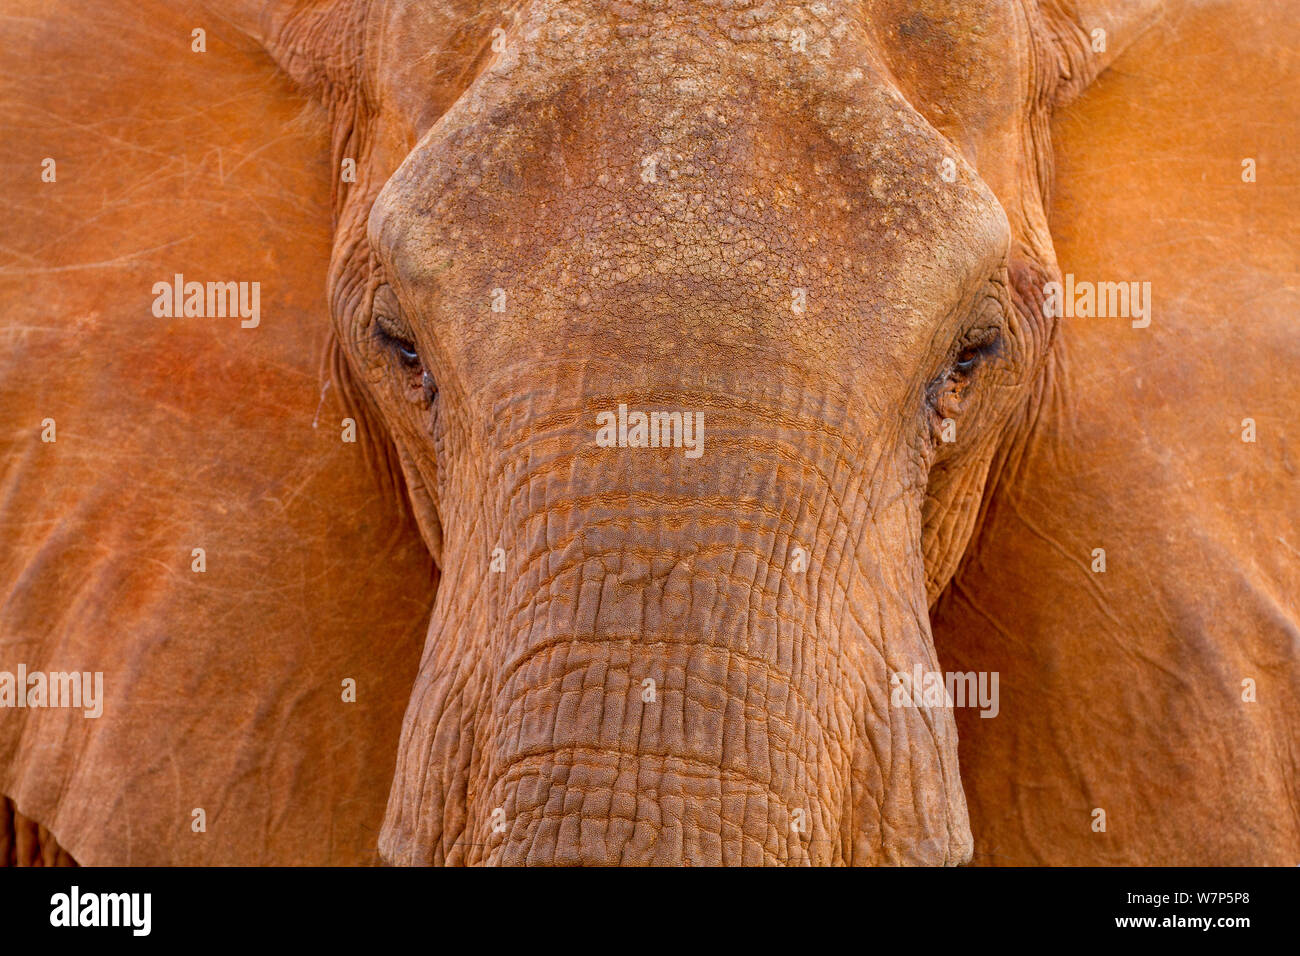 L'éléphant africain (Loxodonta africana) portrait. Tsavo East National Park, Kenya. Banque D'Images